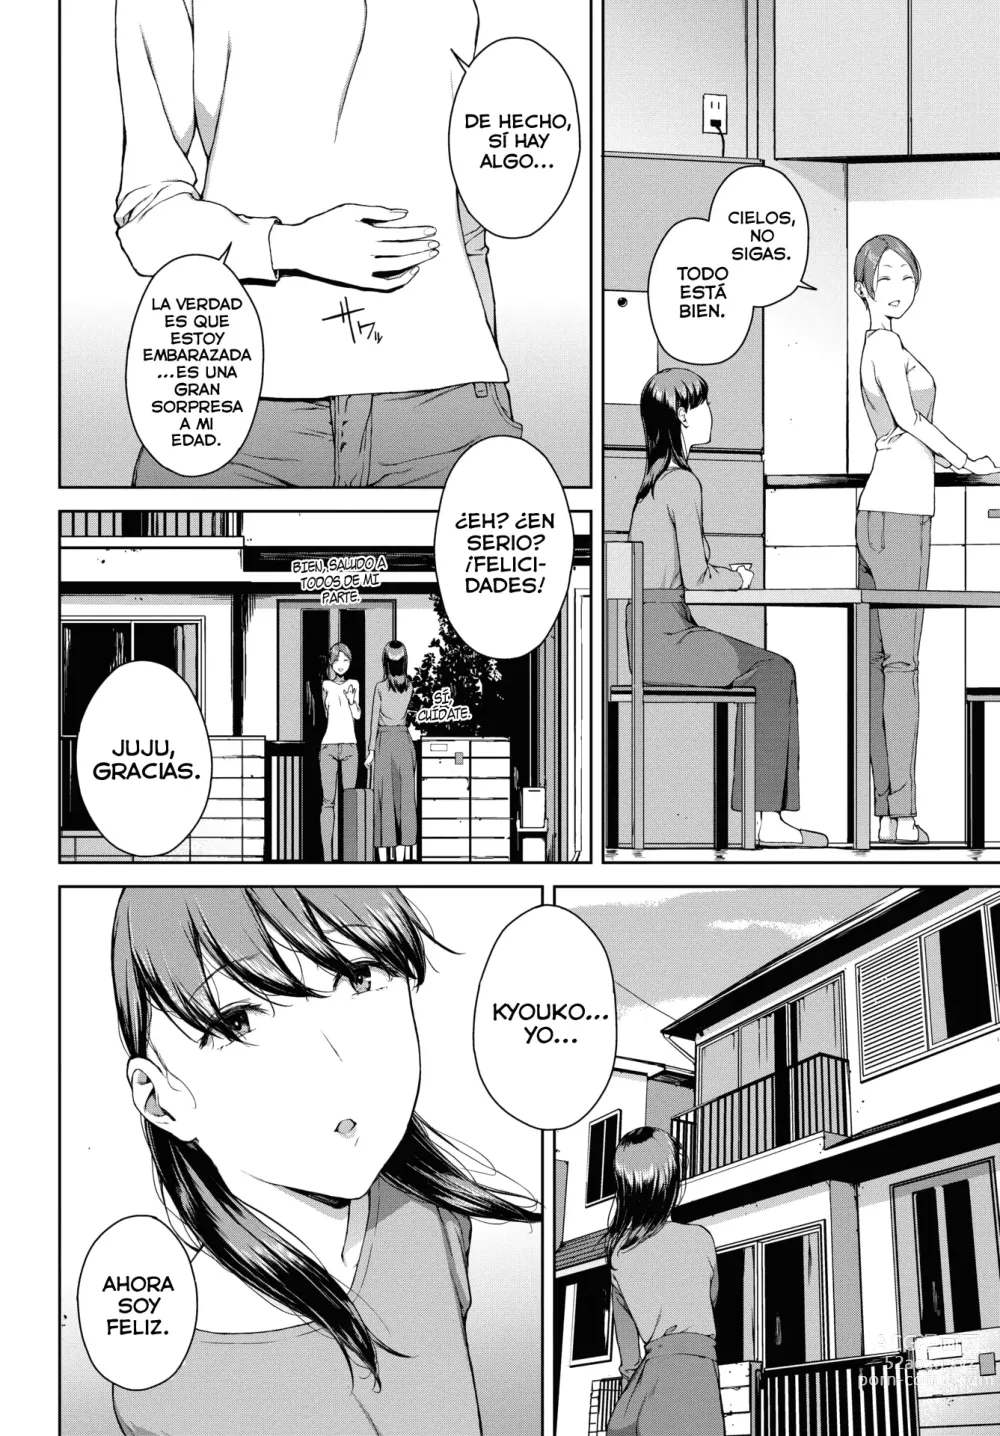 Page 4 of manga Yoriko Parte 02